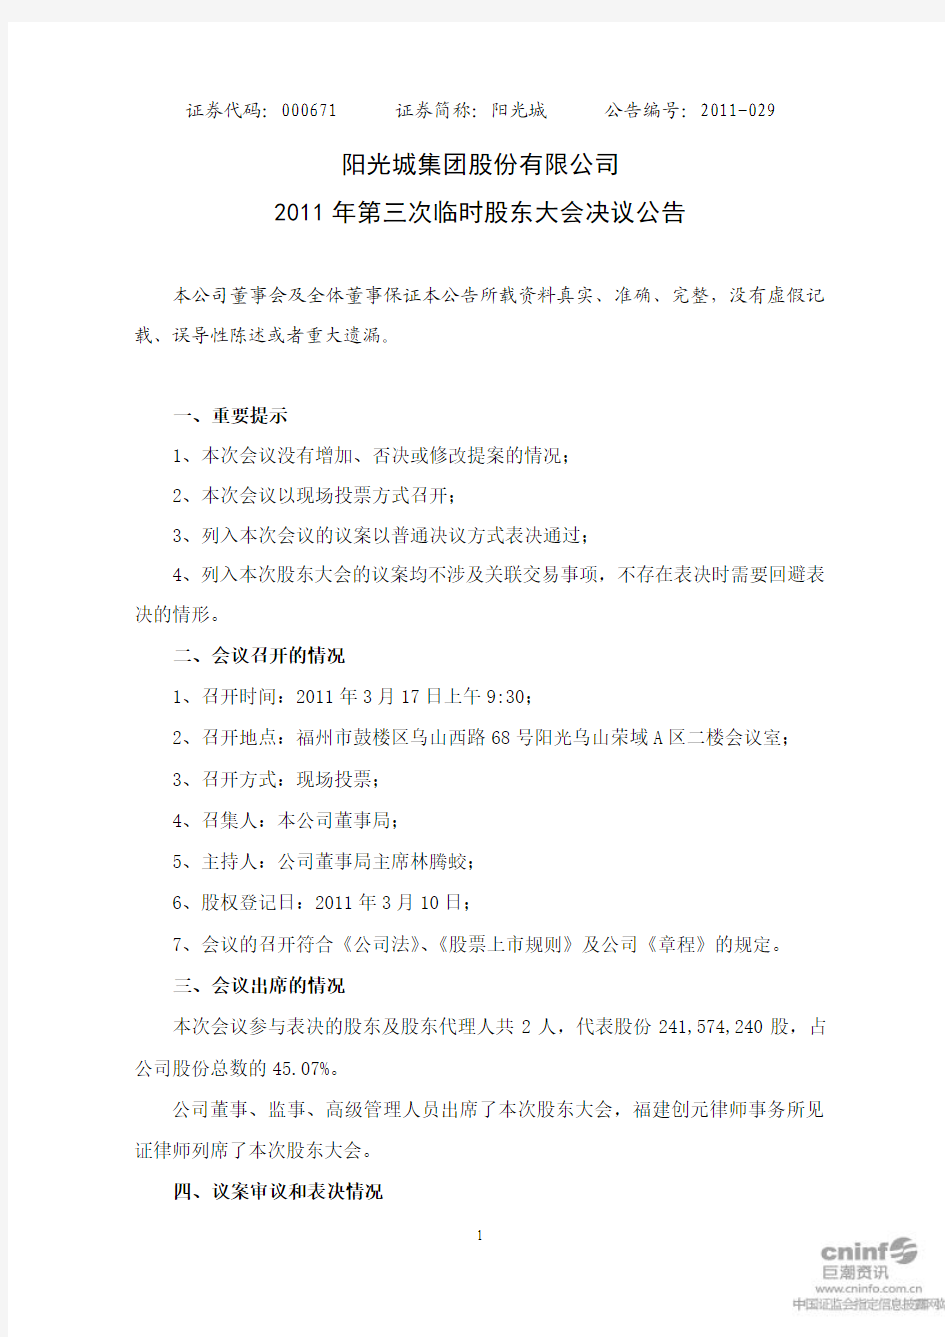 阳 光 城：2011年第三次临时股东大会决议公告 2011-03-18